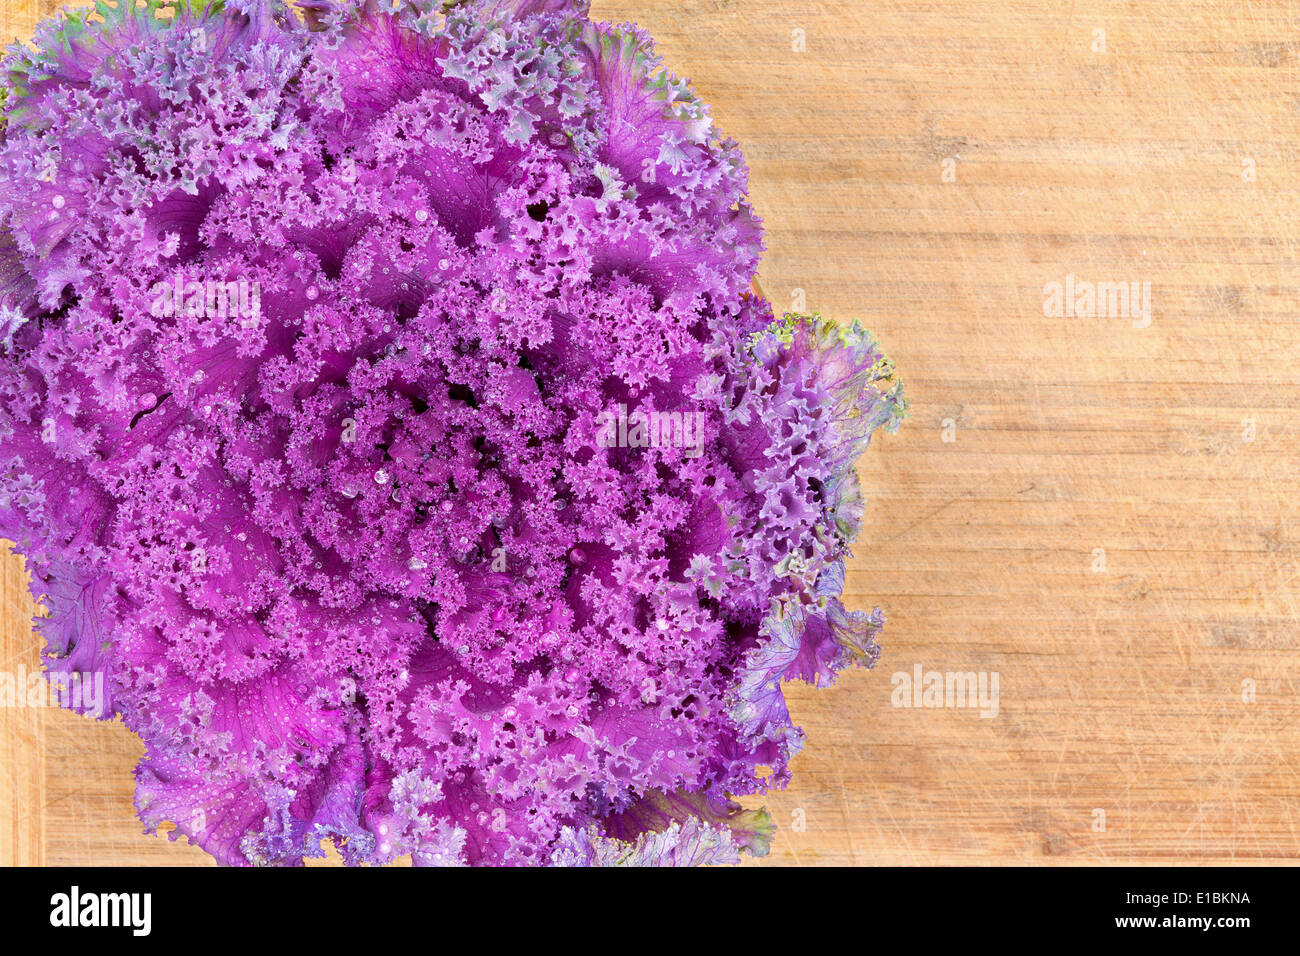 Organique saine à feuilles frisées violet kale libre texture avec une vue de dessus comme les matières premières fraîches entières sur une vieille tête c bambou Banque D'Images